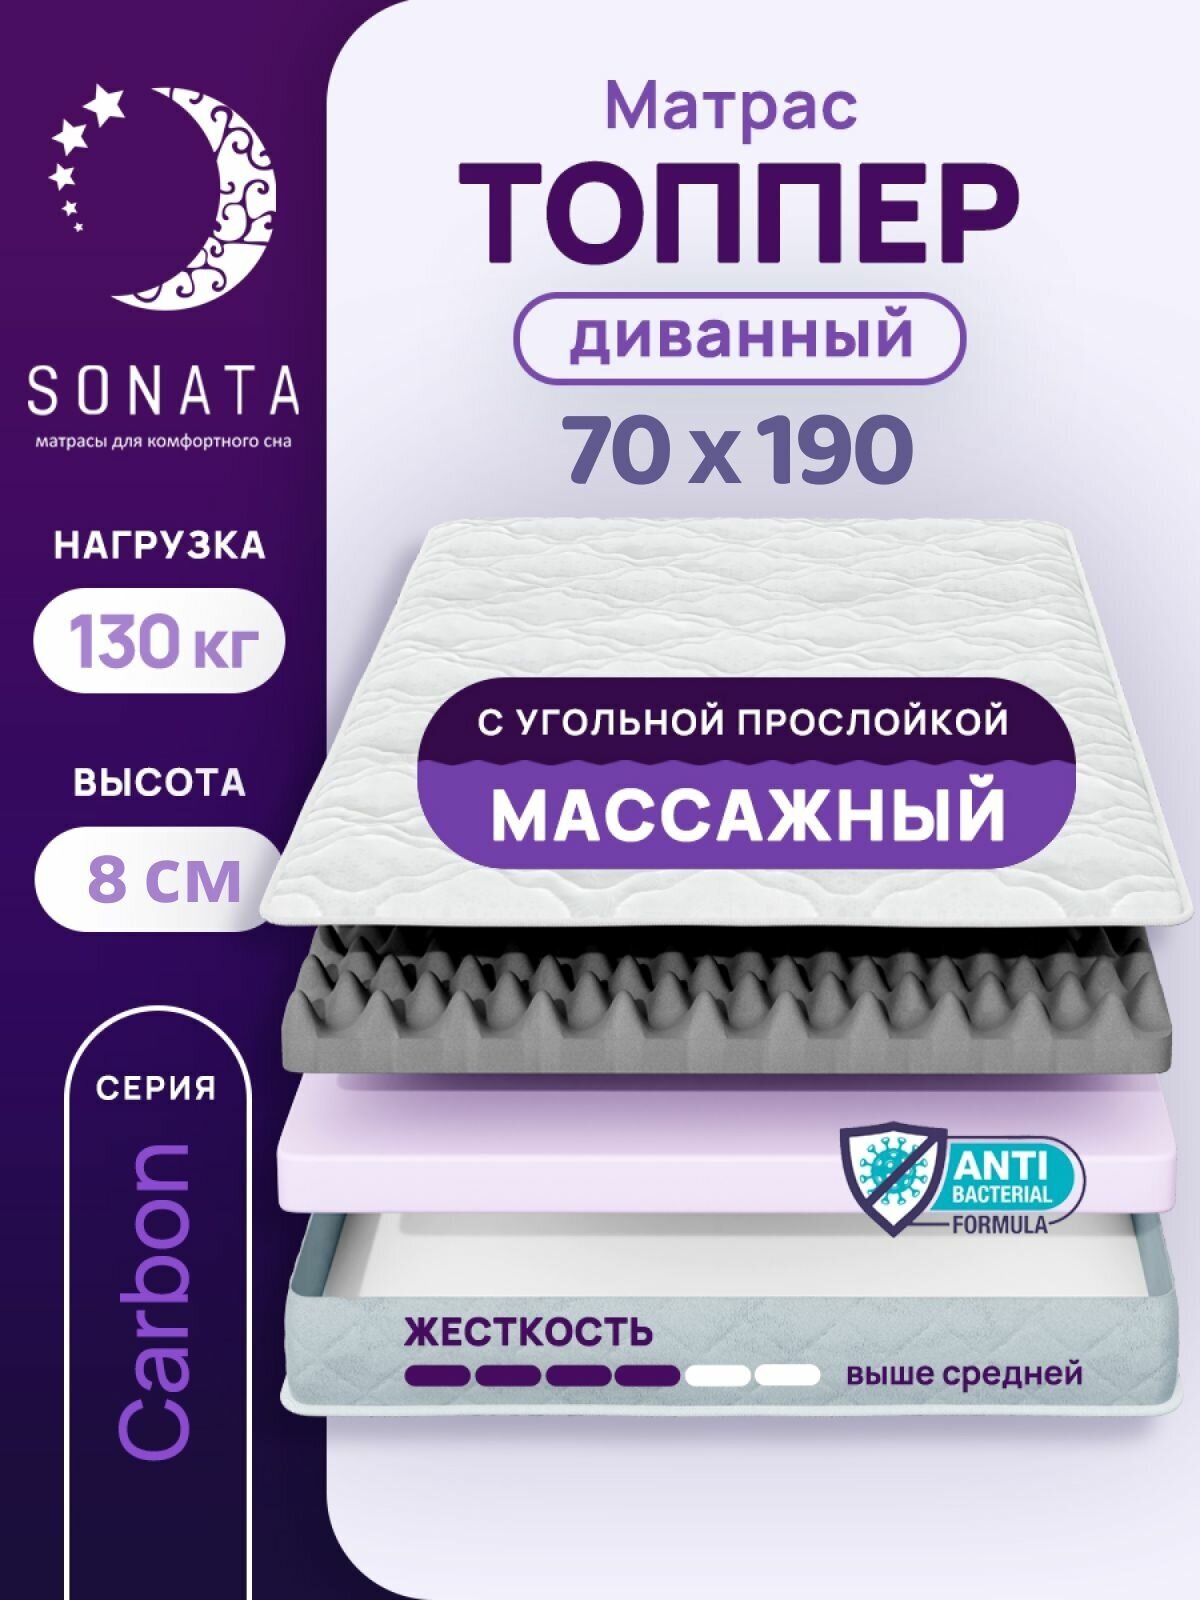 Топпер матрас 70х190 см SONATA, ортопедический, беспружинный, односпальный, тонкий матрац для дивана, кровати, высота 8 см с массажным эффектом